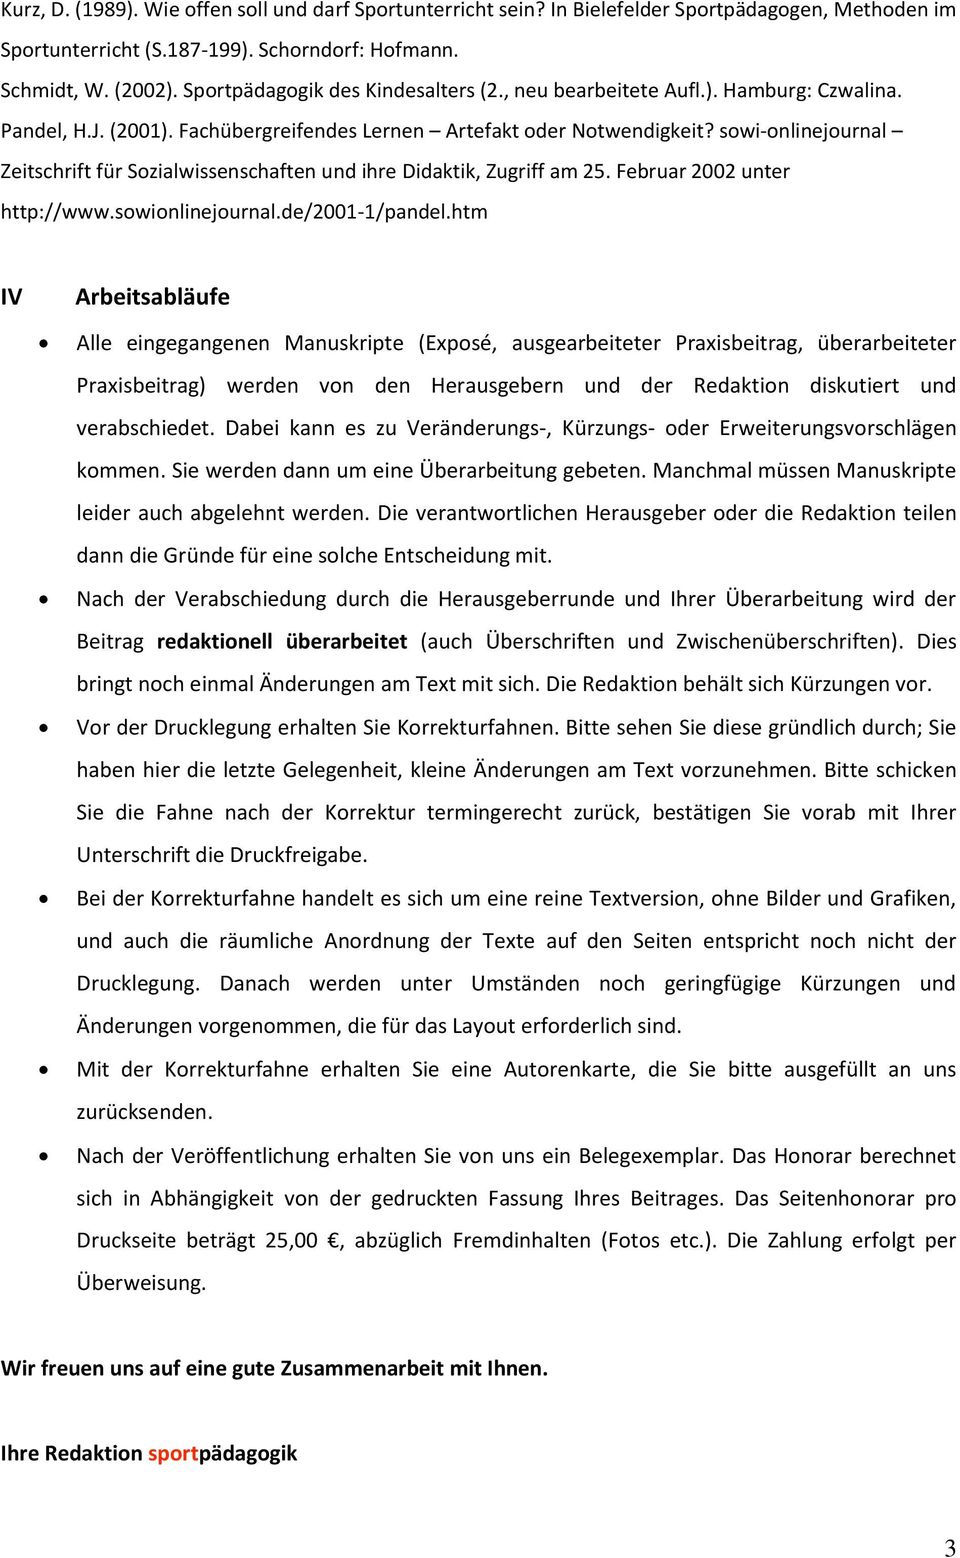 sowi-onlinejournal Zeitschrift für Sozialwissenschaften und ihre Didaktik, Zugriff am 25. Februar 2002 unter http://www.sowionlinejournal.de/2001-1/pandel.